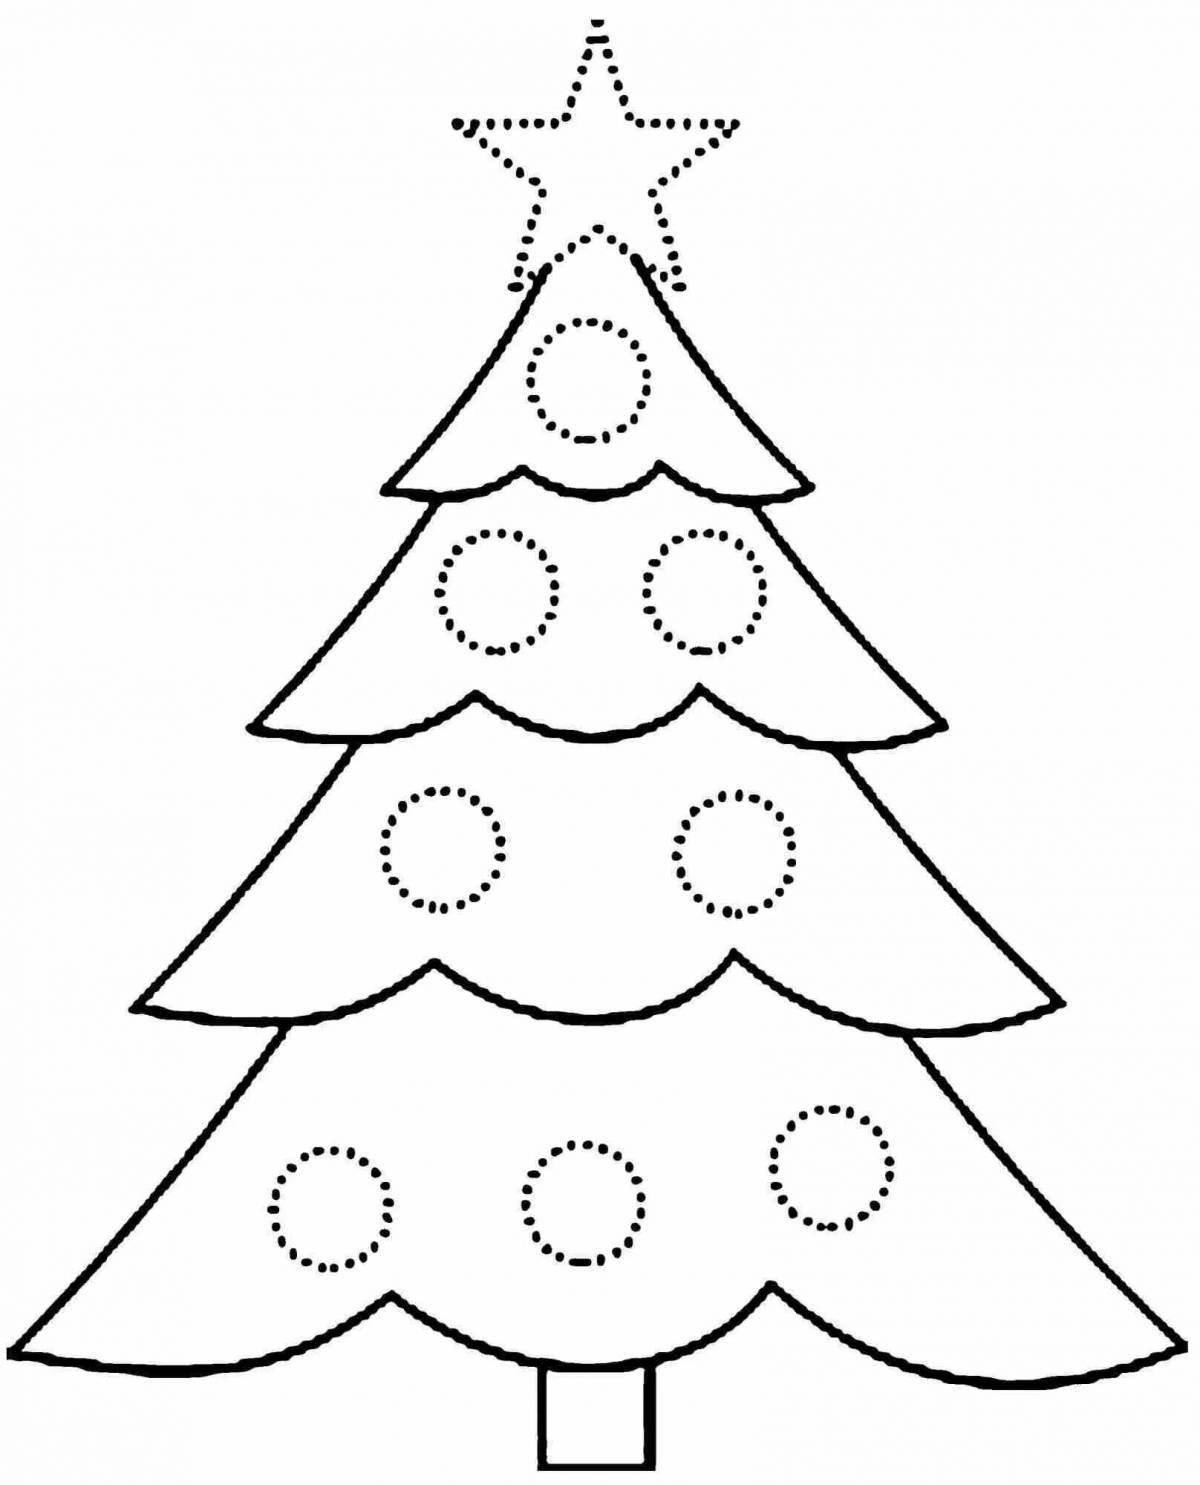 Красочная страница раскраски рождественской елки для детей